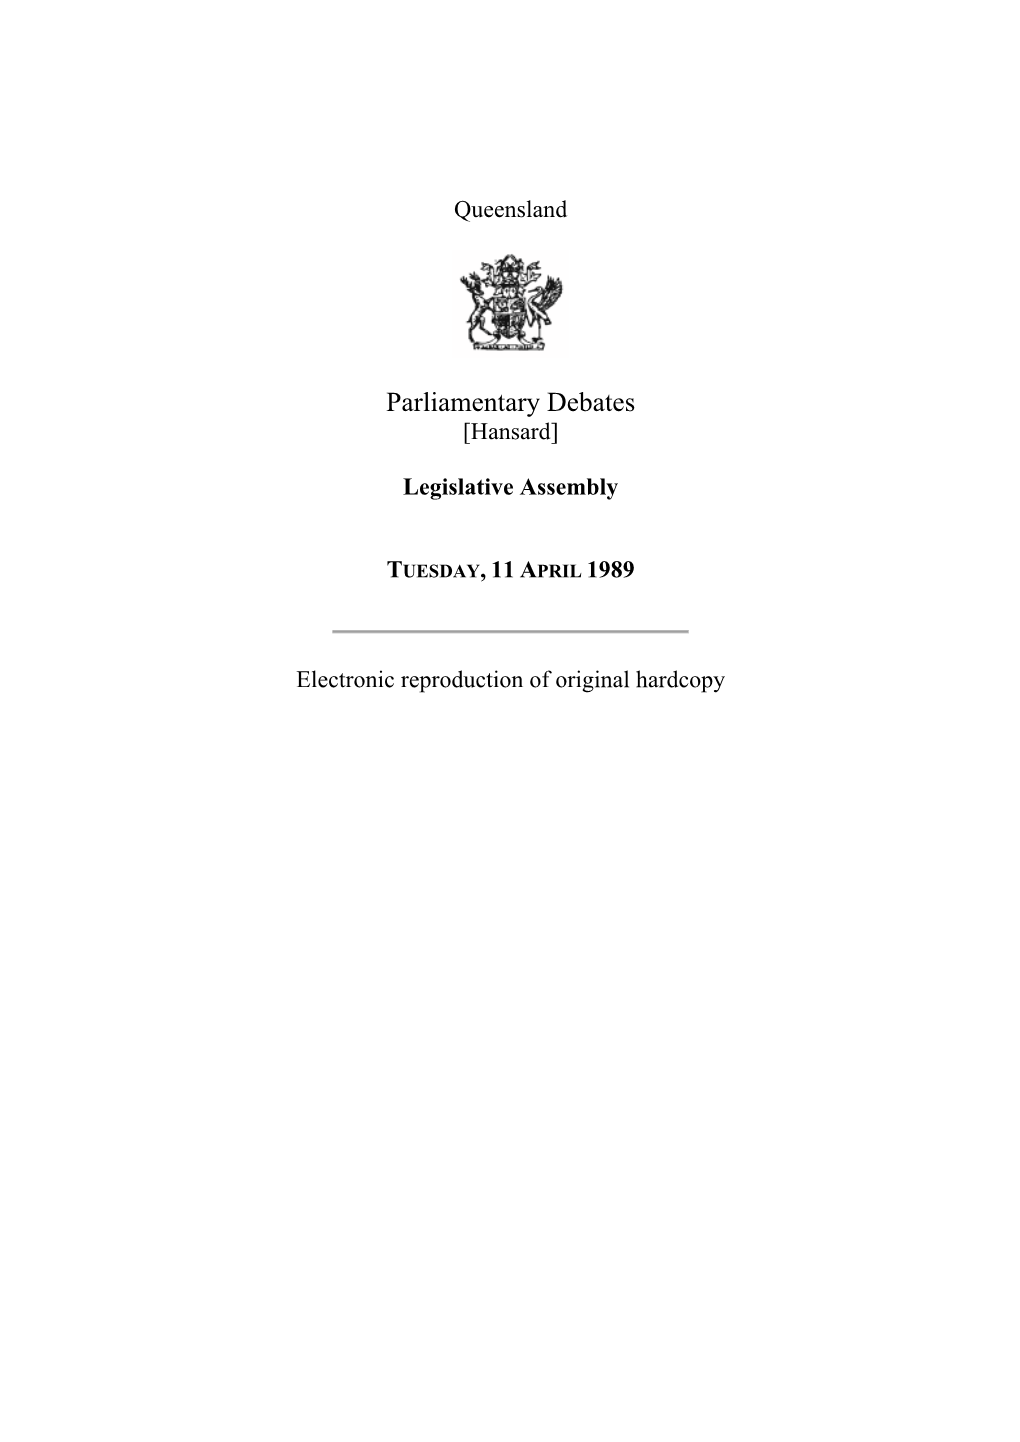 Legislative Assembly Hansard 1989